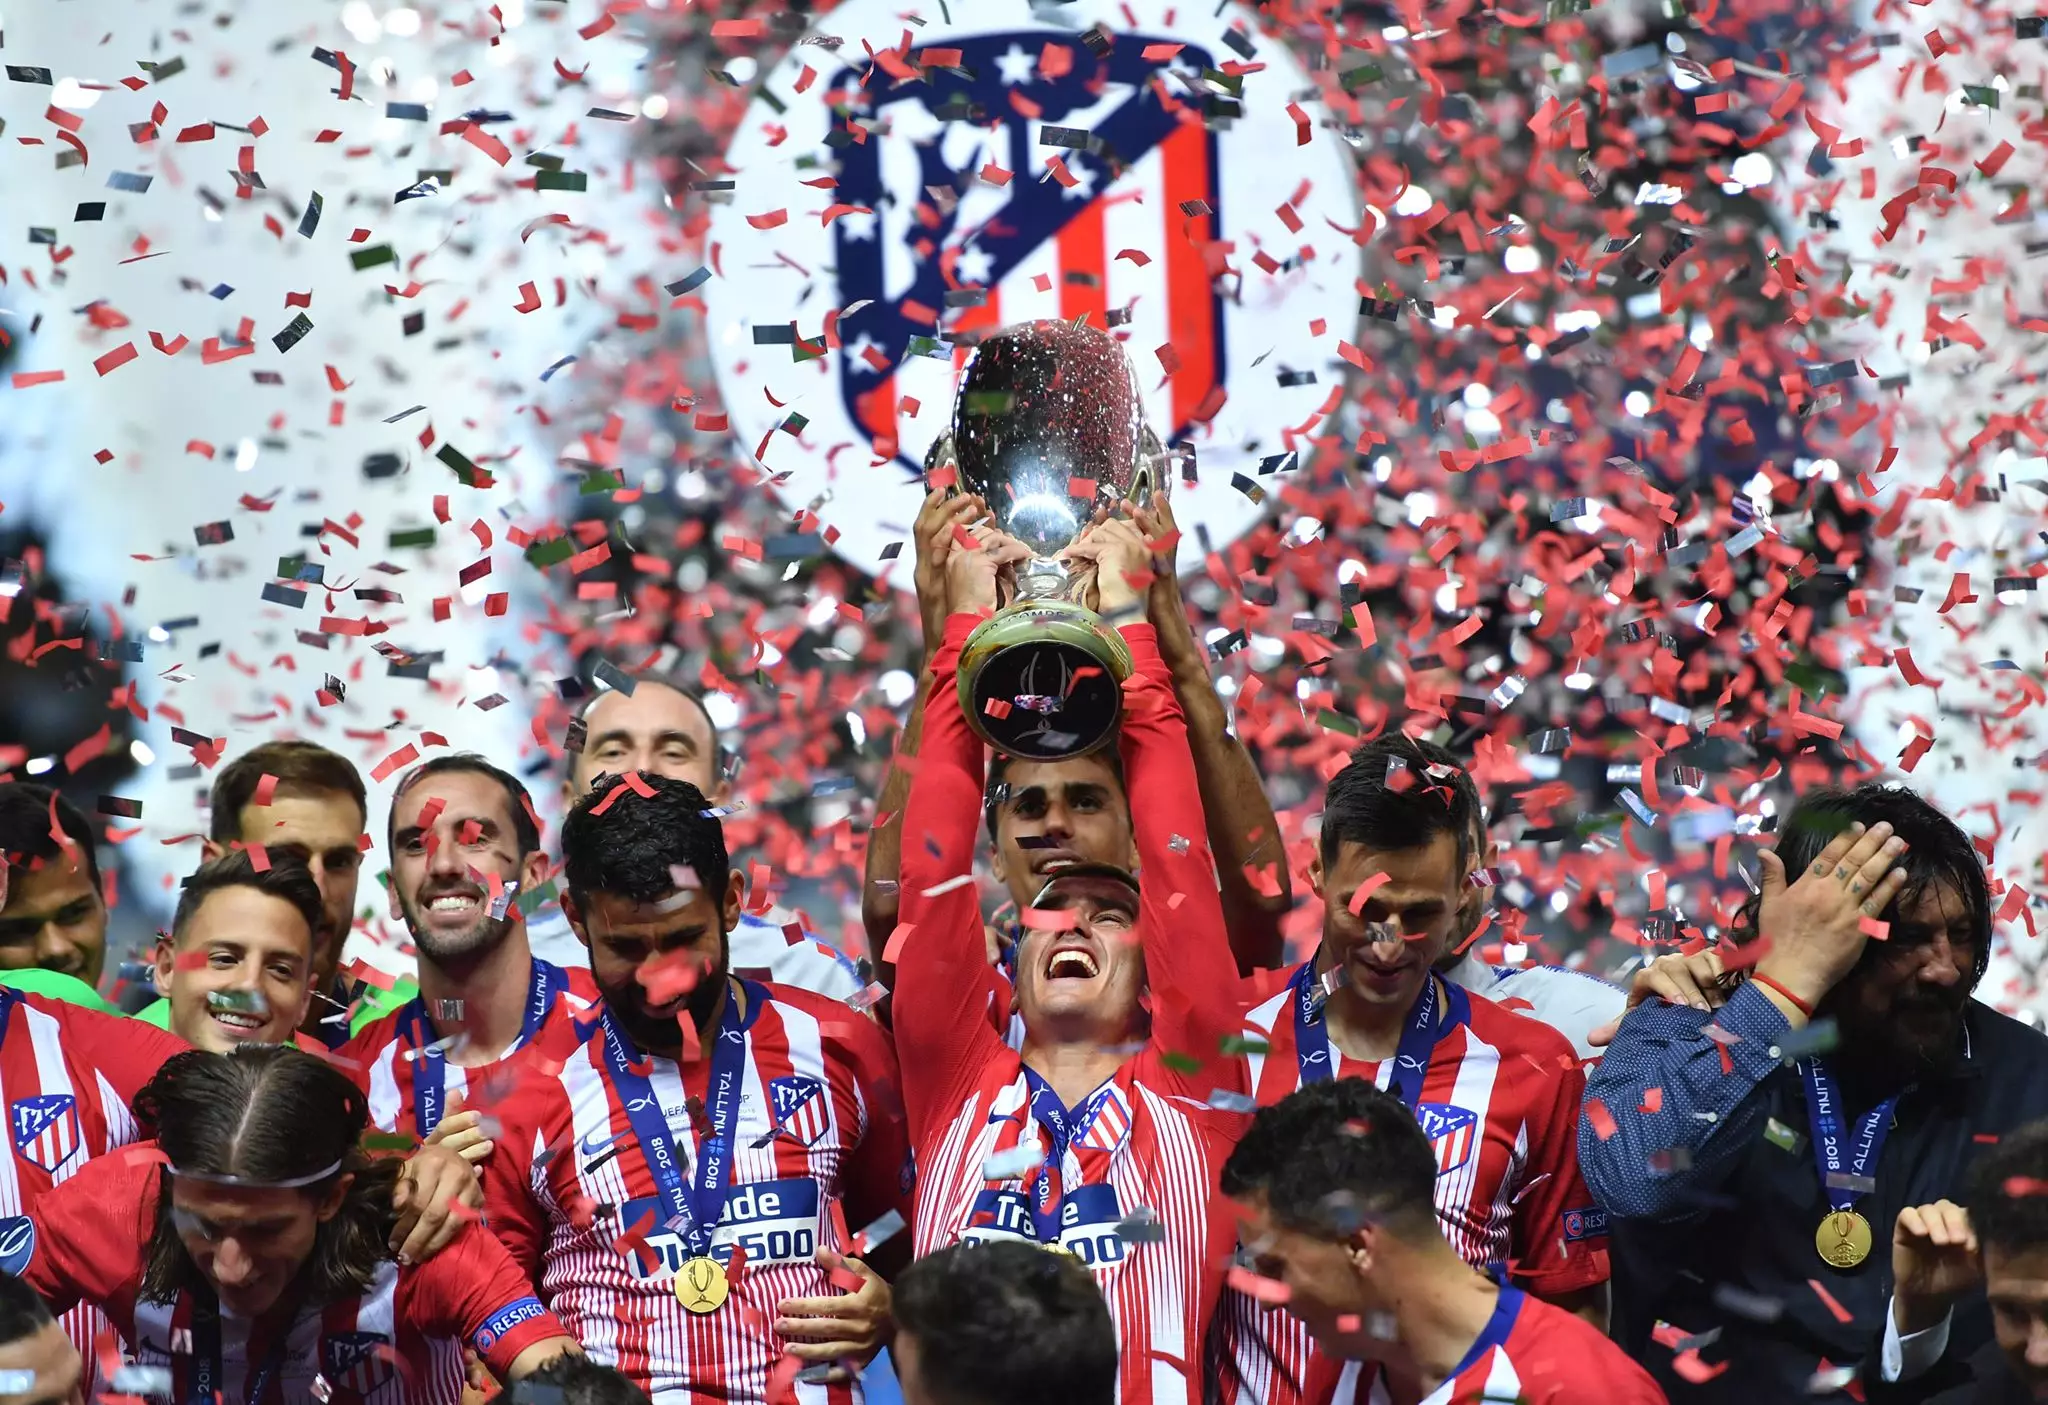 Griezmann raises the UEFA Super Cup. Image: PA